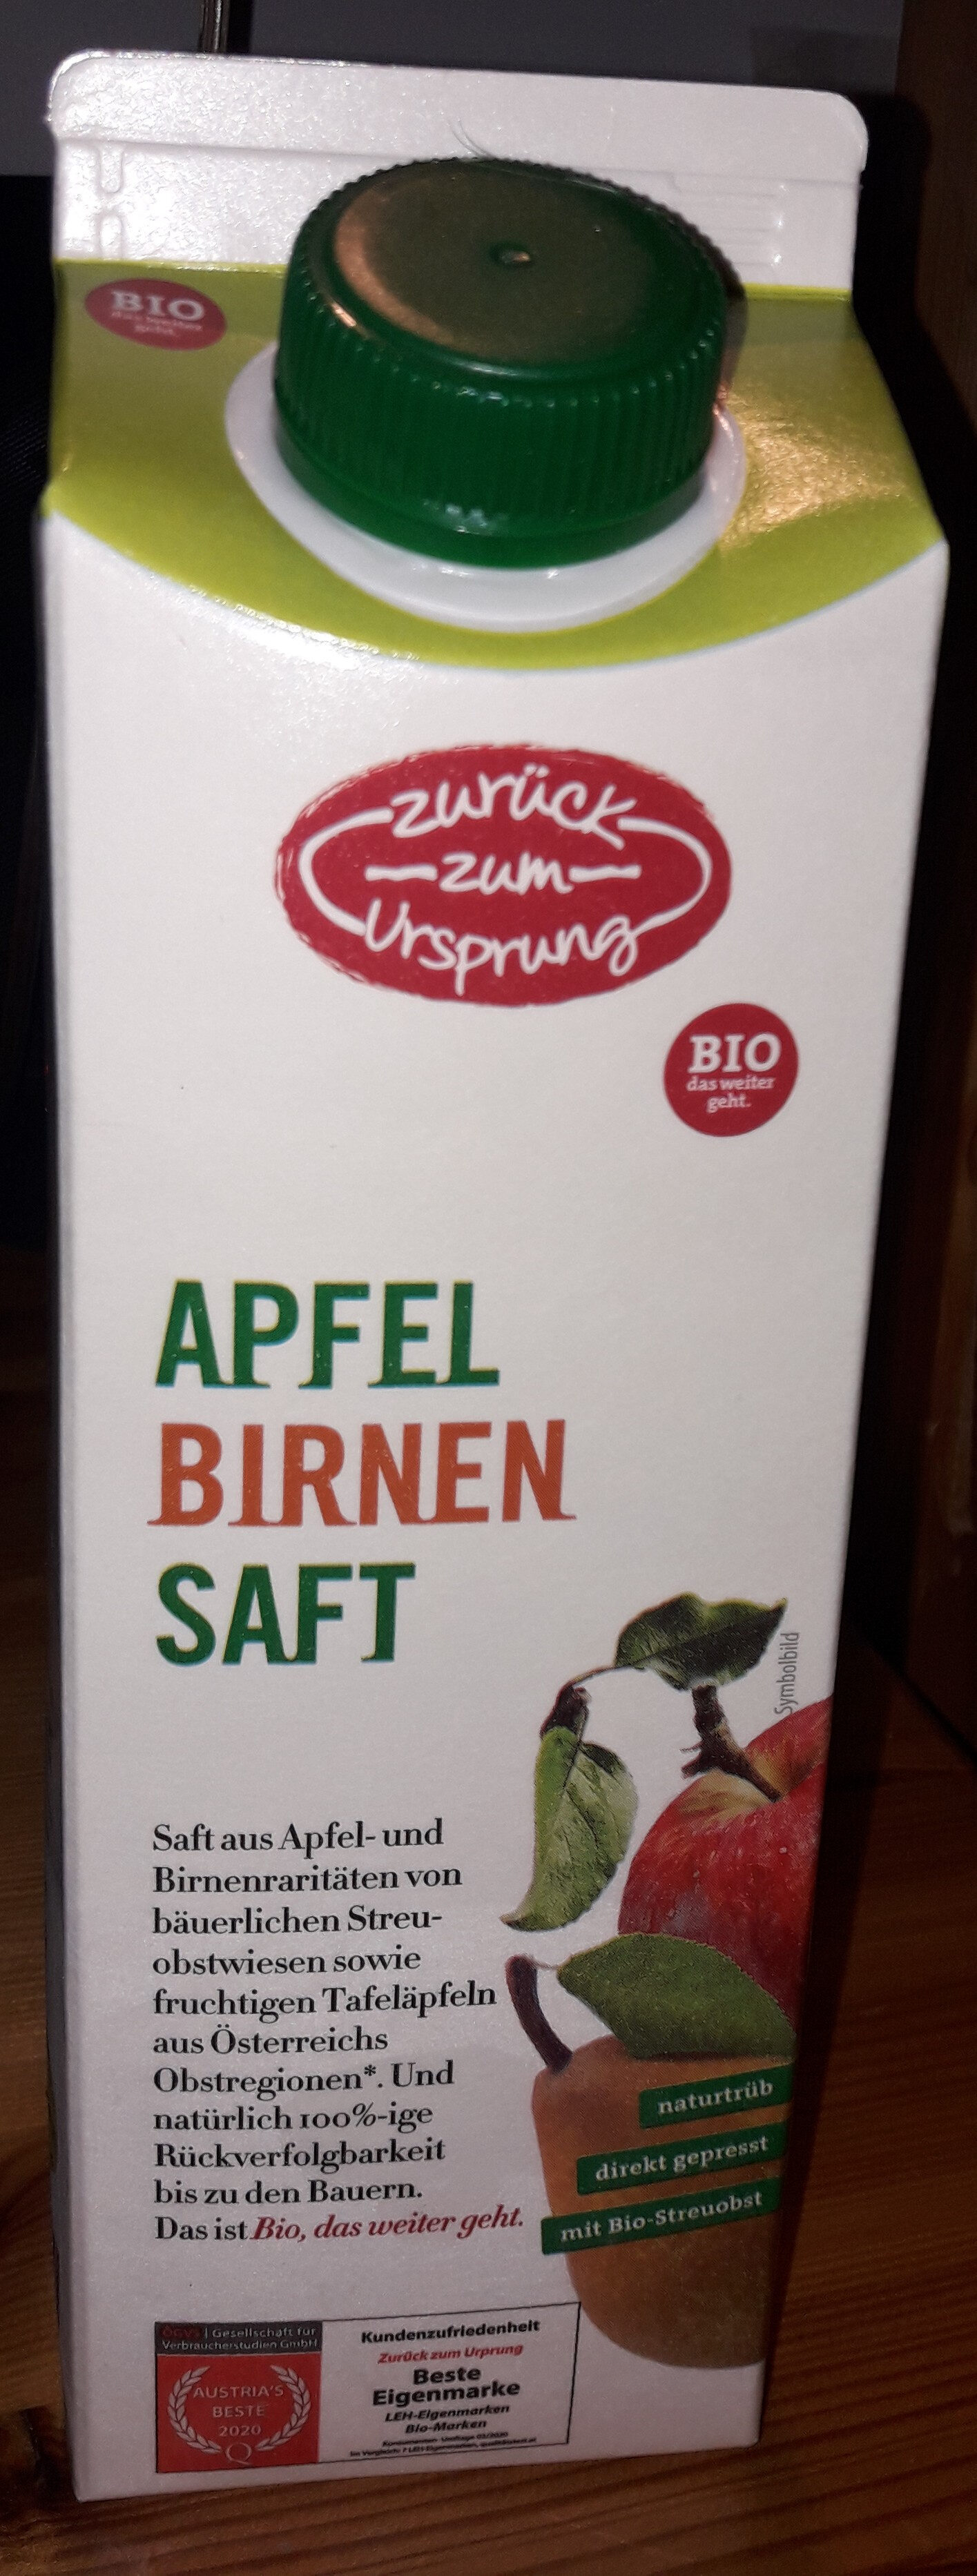 Apfel Birnen Saft - Product - de